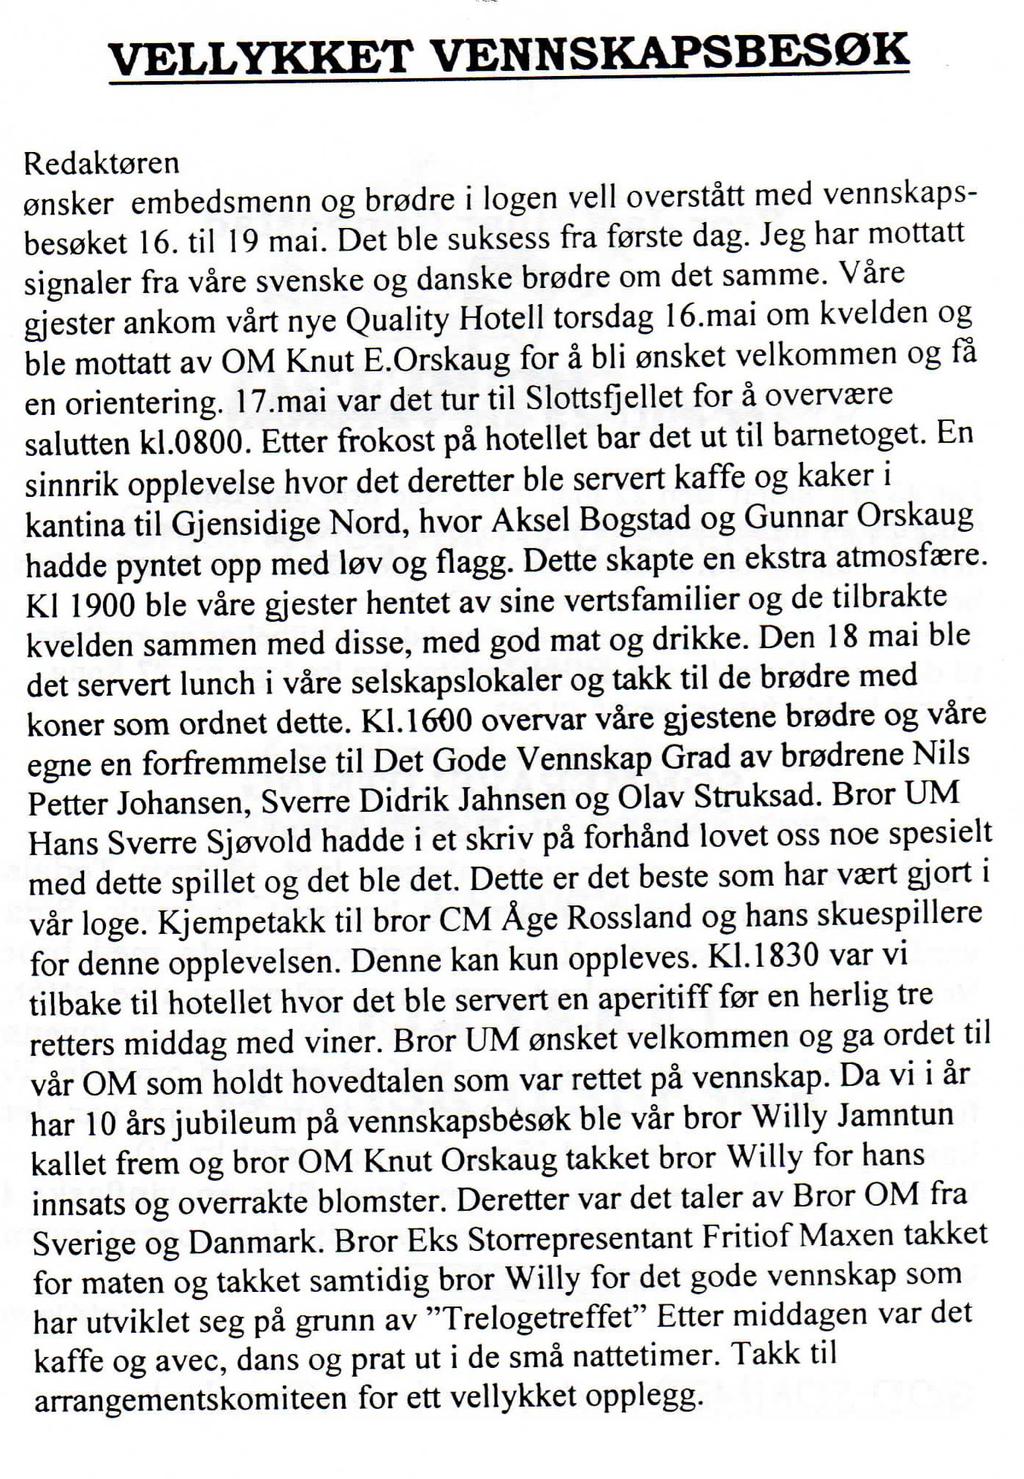 Dette er fra Osebergposten i 2002, etter at vi hadde hatt et svært hyggelig besøk av våre danske og svenske venner.